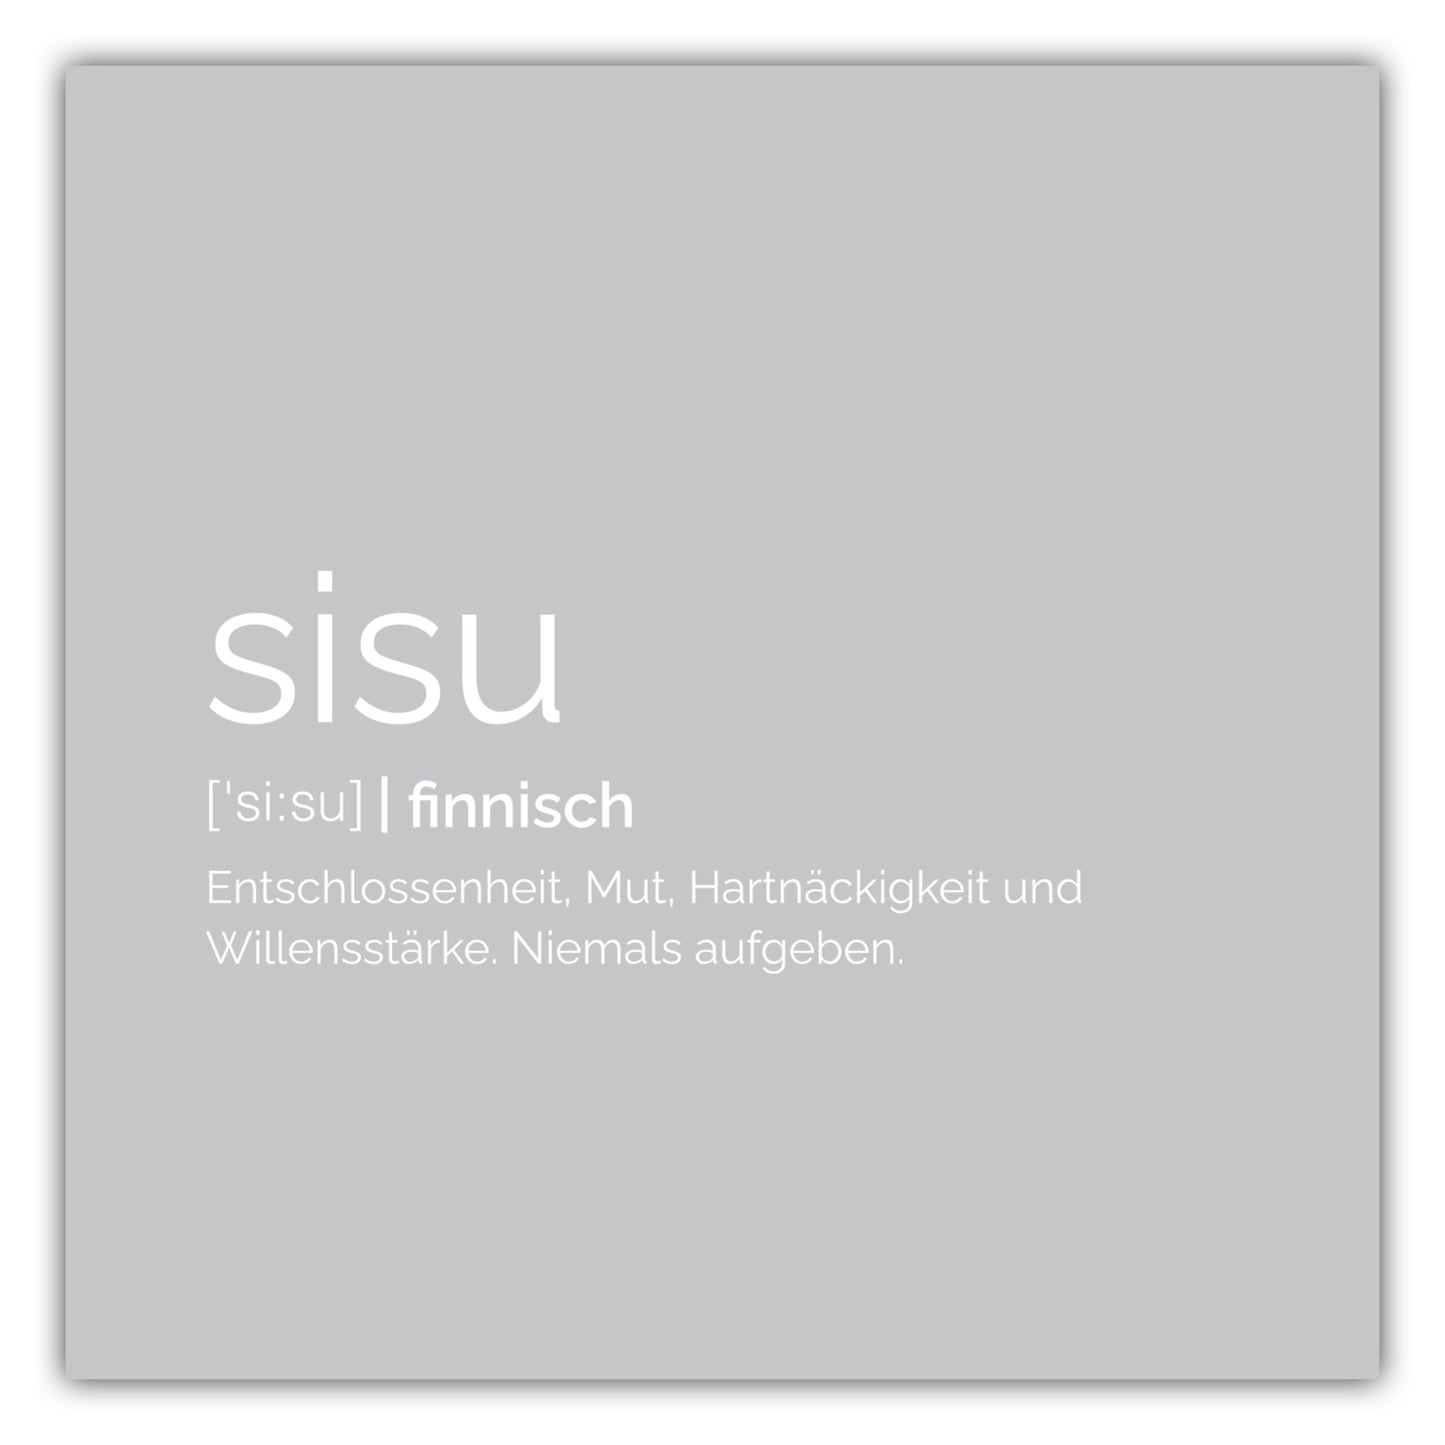 Poster Sisu (Finnisch: Entschlossenheit)